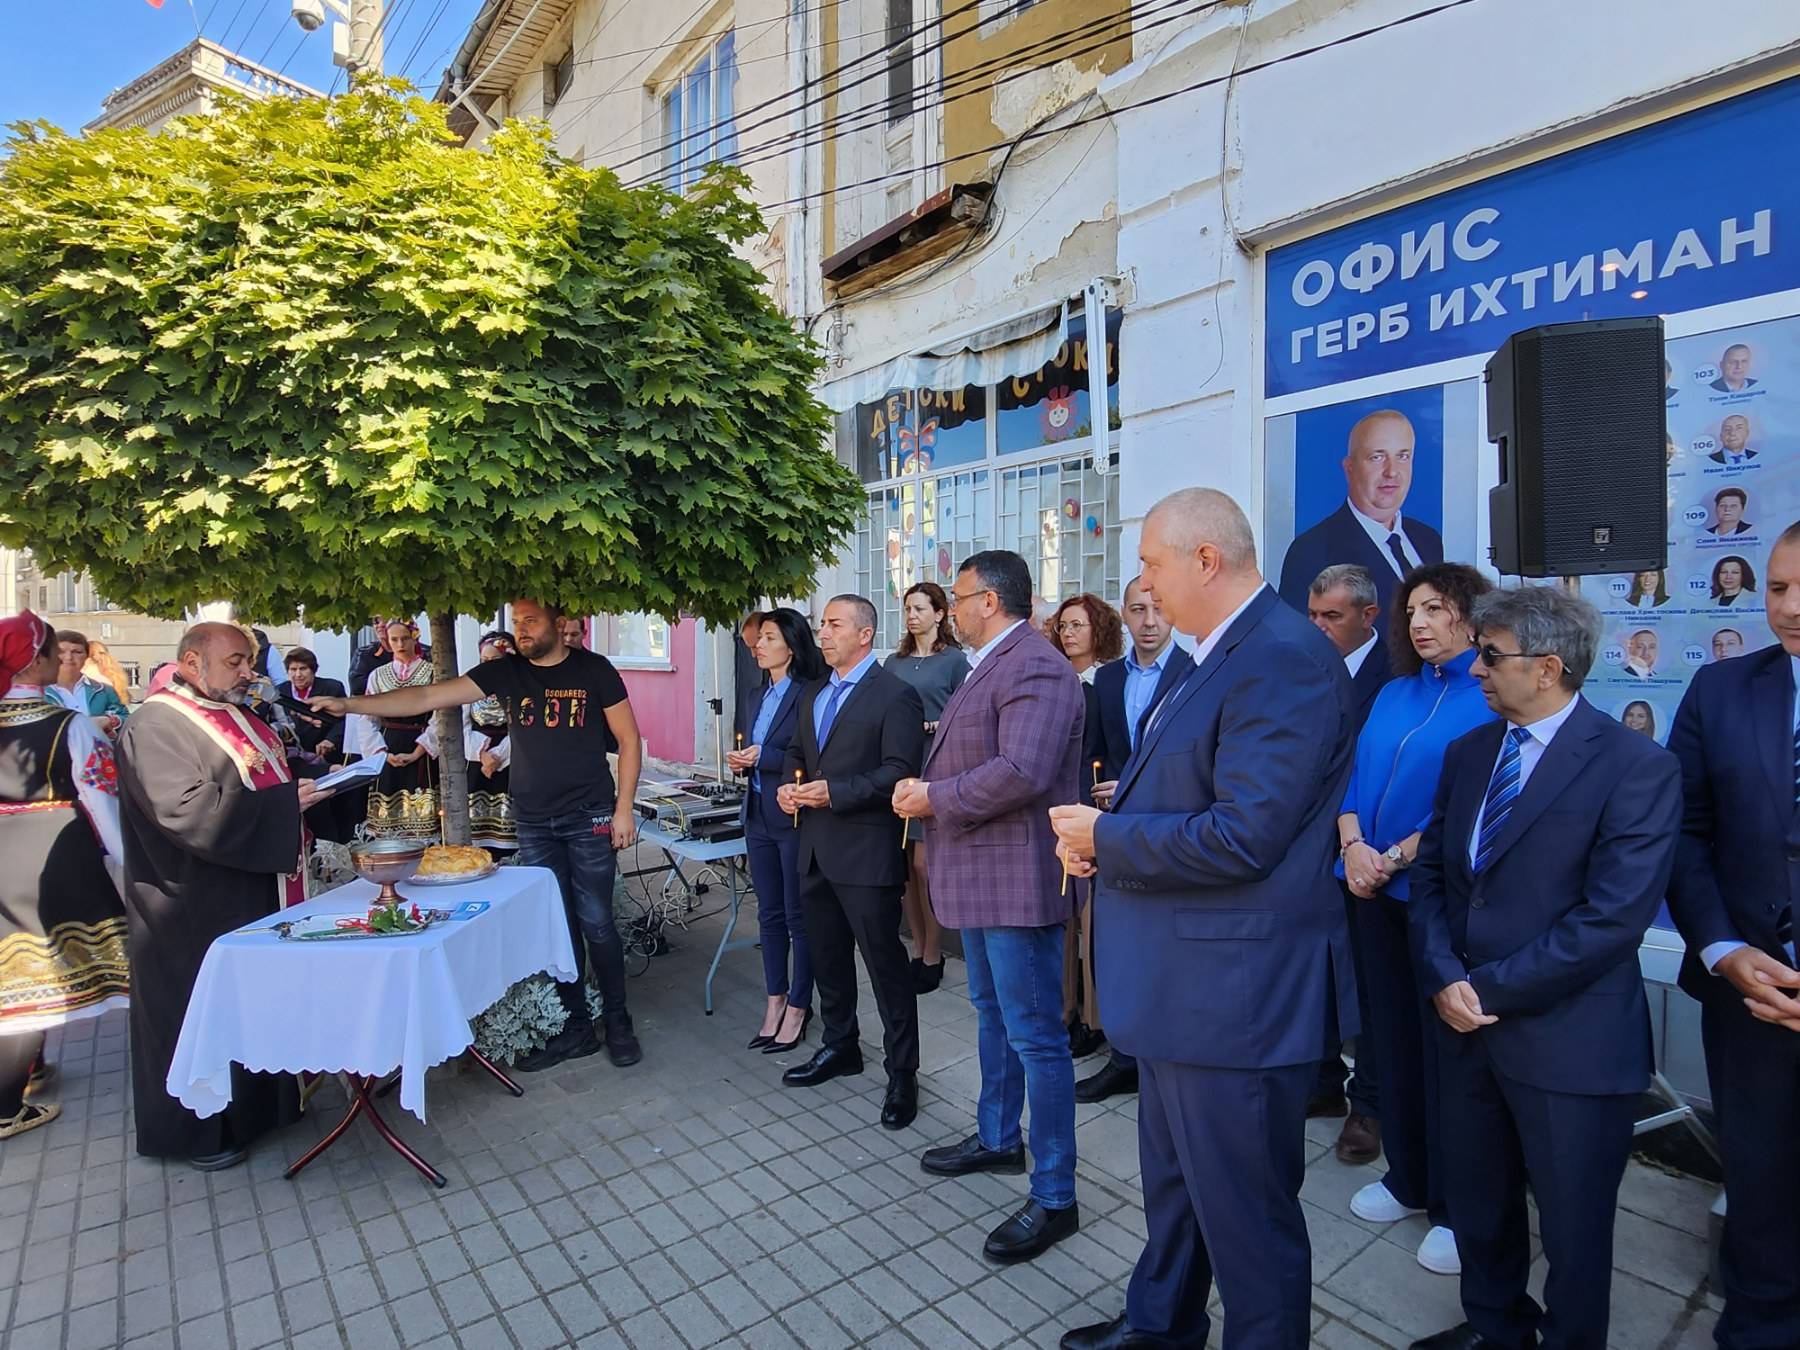 Кандидат-кметът на ГЕРБ за град Ихтиман Калоян Илиев откри официално предизборната си кампания